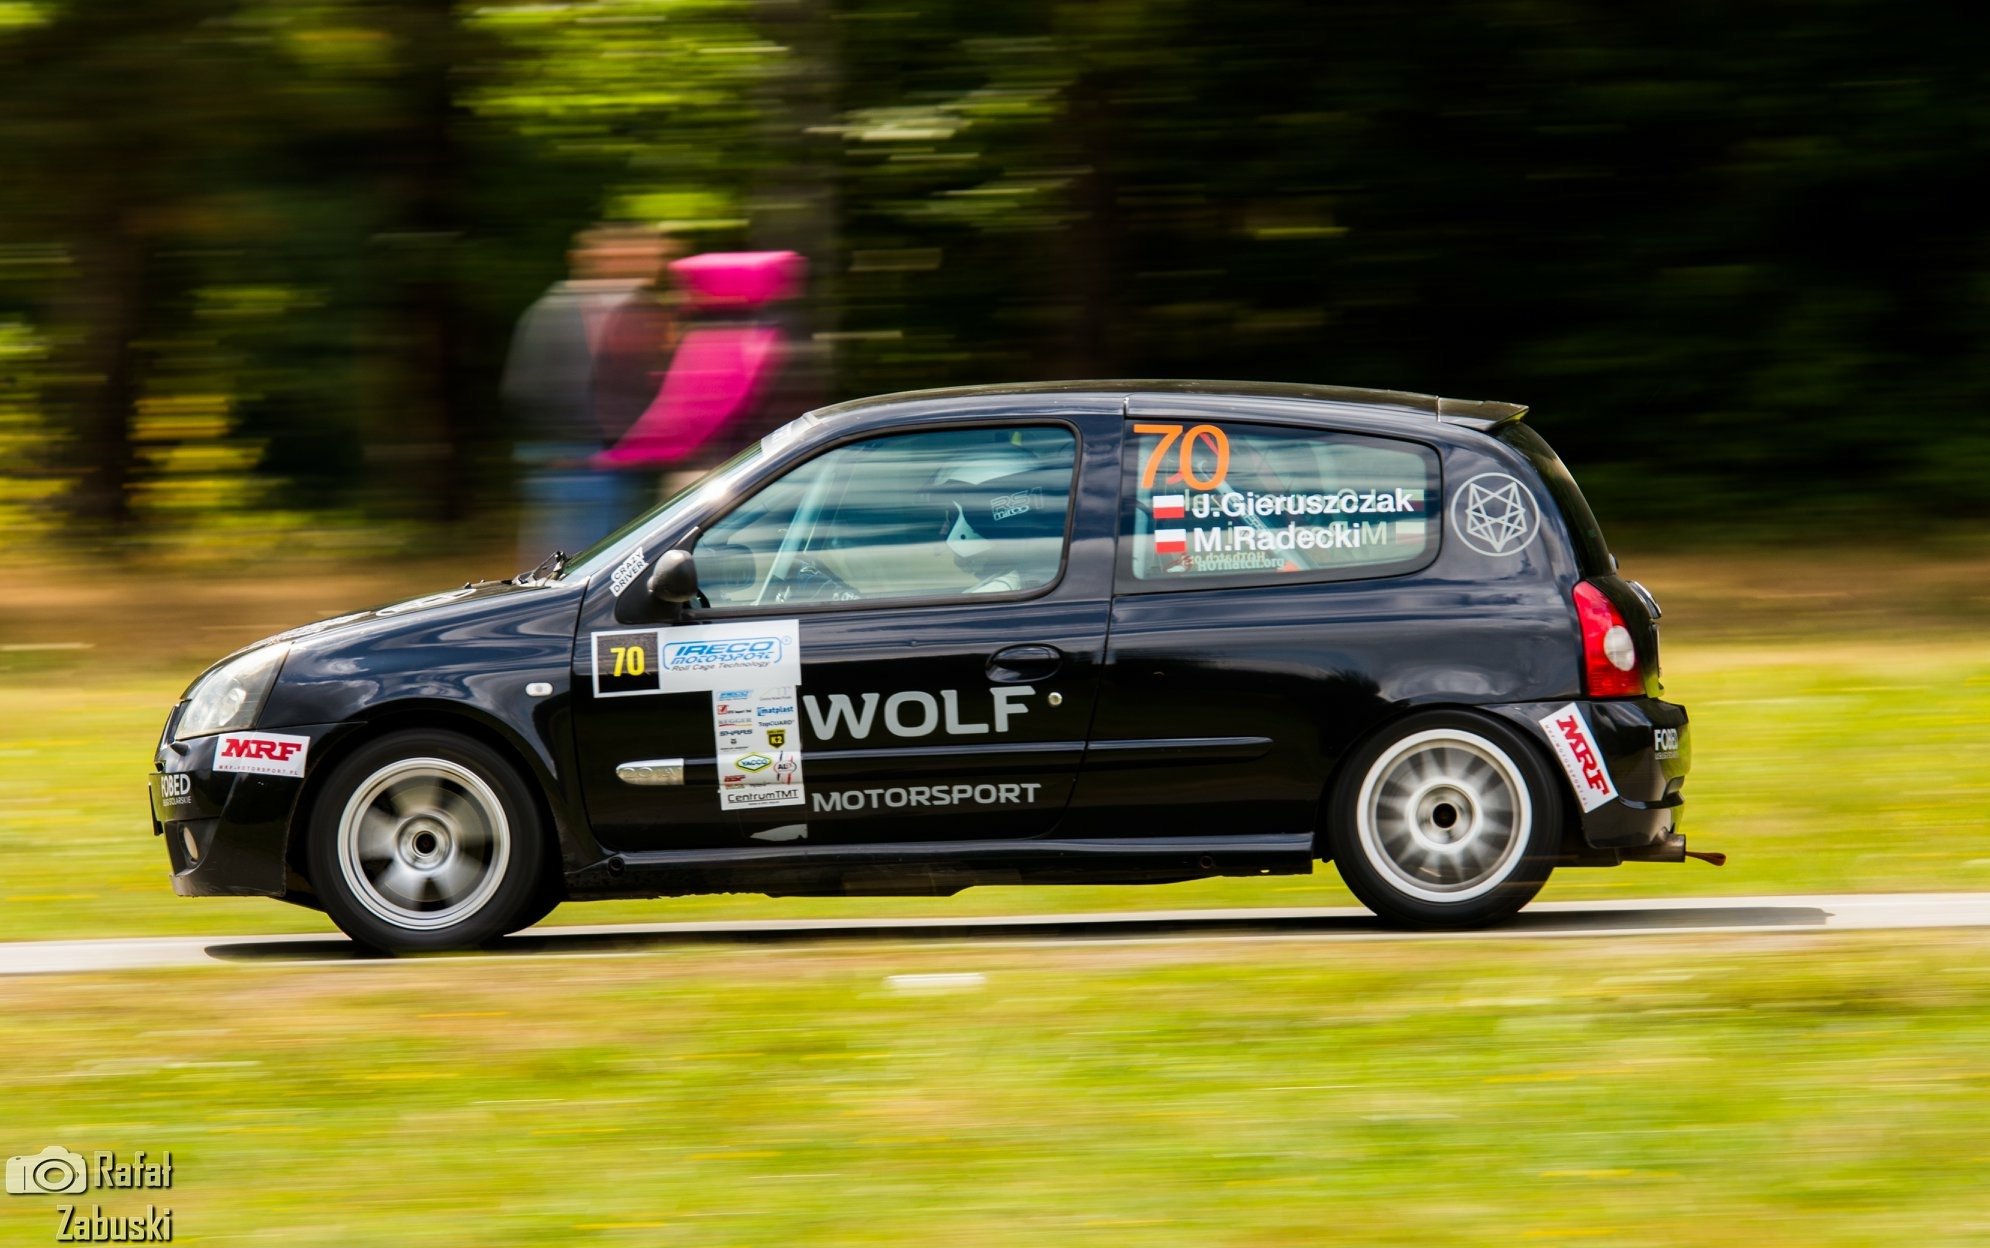 Entretien avec Wolf Motorsport : Que sont les rallyes, combien coûtent-ils et quelle est la consommation de carburant de la Clio Sport ?  |  français.pl